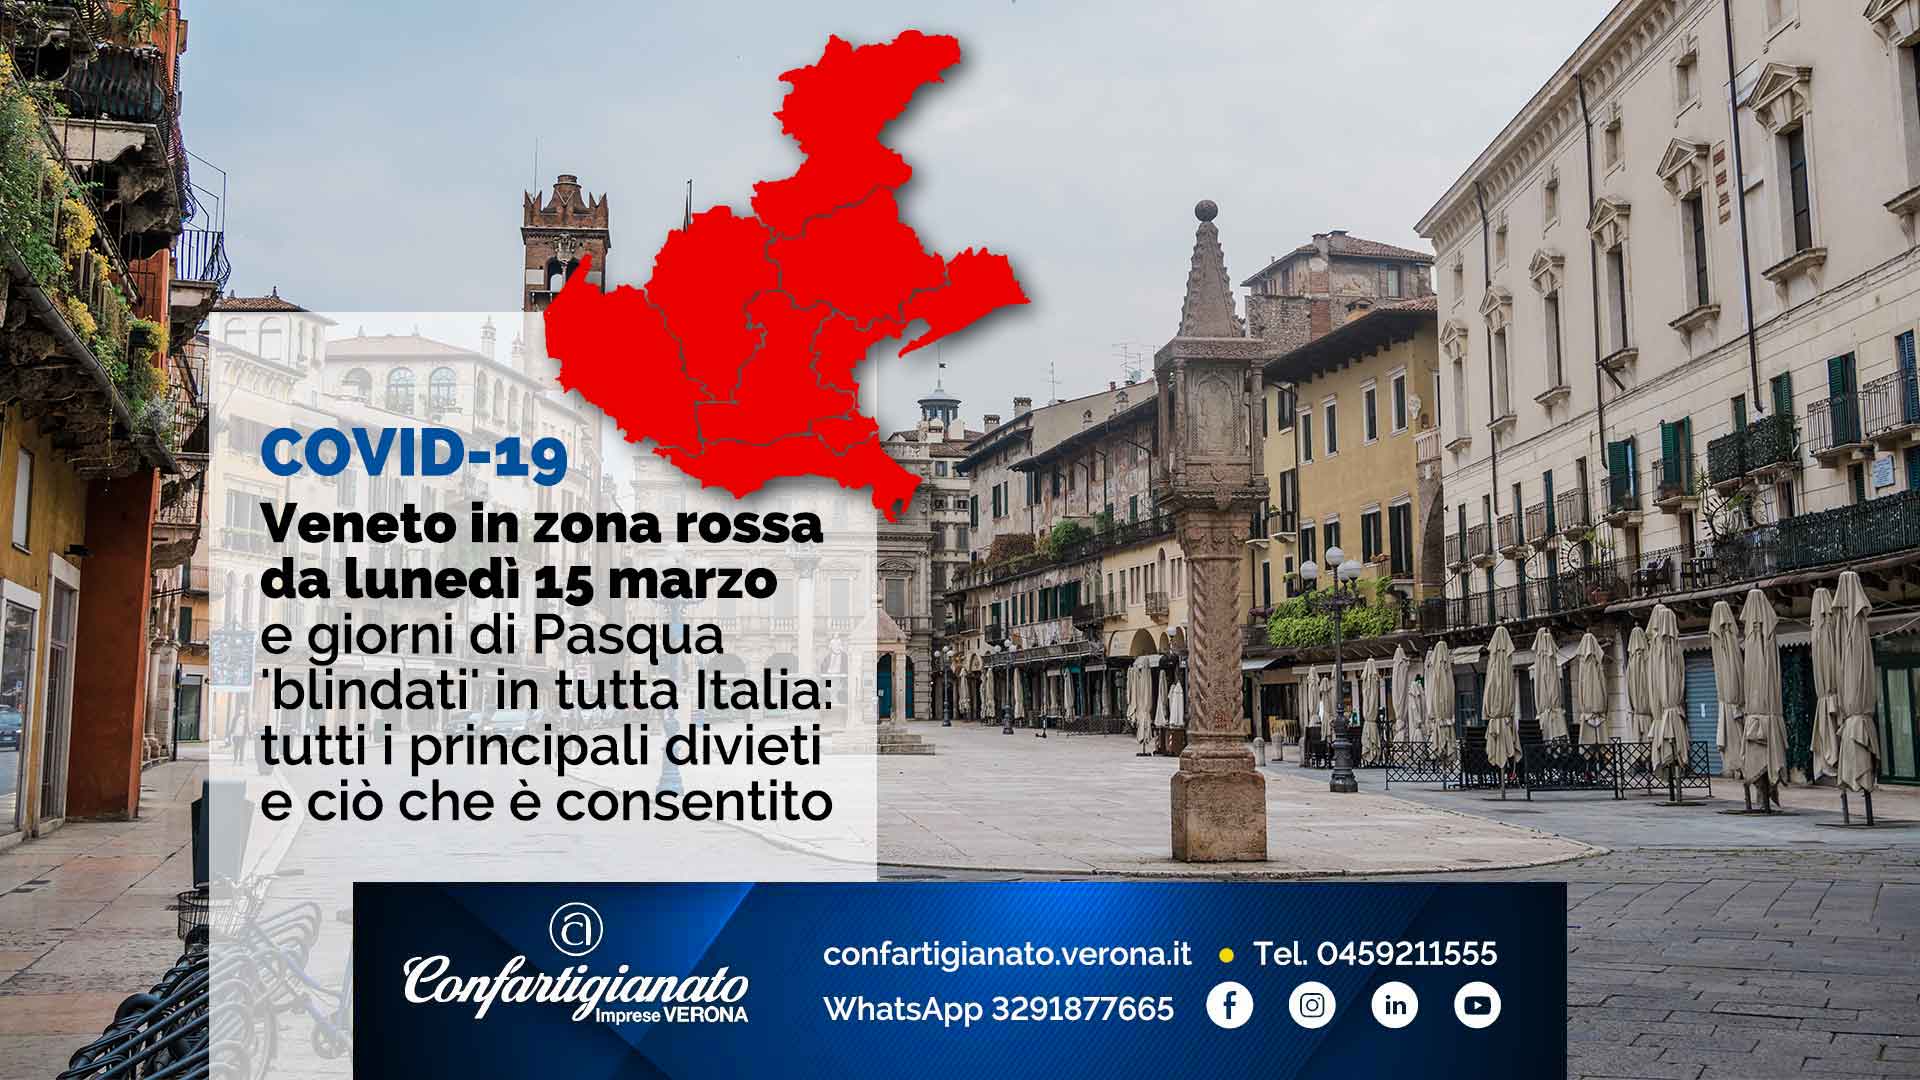 COVID-19 – Veneto in 'zona rossa' da lunedì 15 marzo e giorni di Pasqua 'blindati' in tutta Italia: tutti i principali divieti e ciò che è consentito